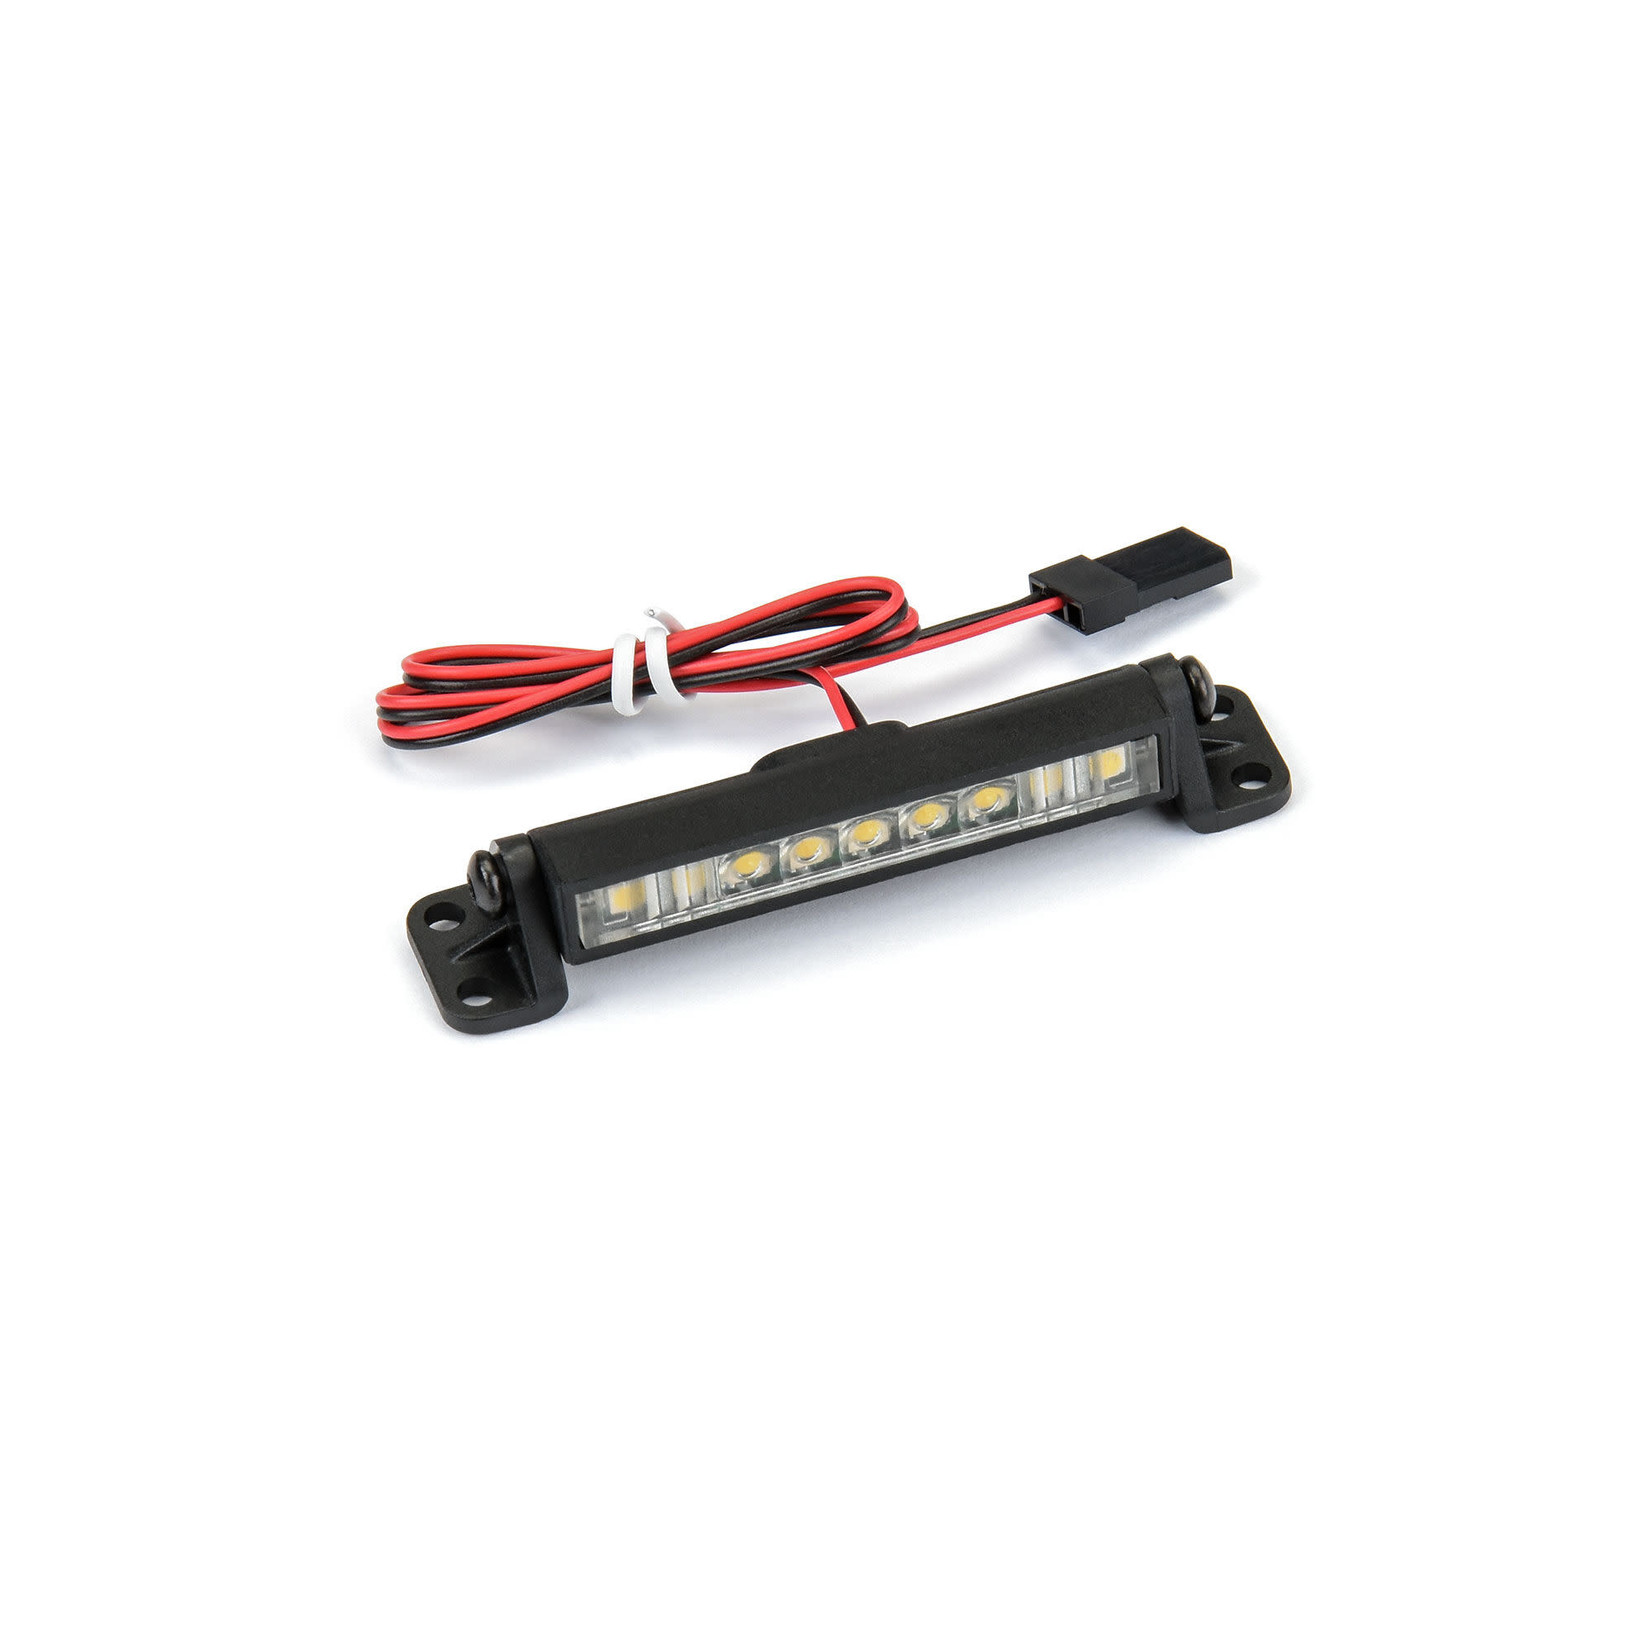 Pro-Line Pro-Line 2" Ultra-Slim LED Light Bar Kit 5V-12V (Straight) #6352-00